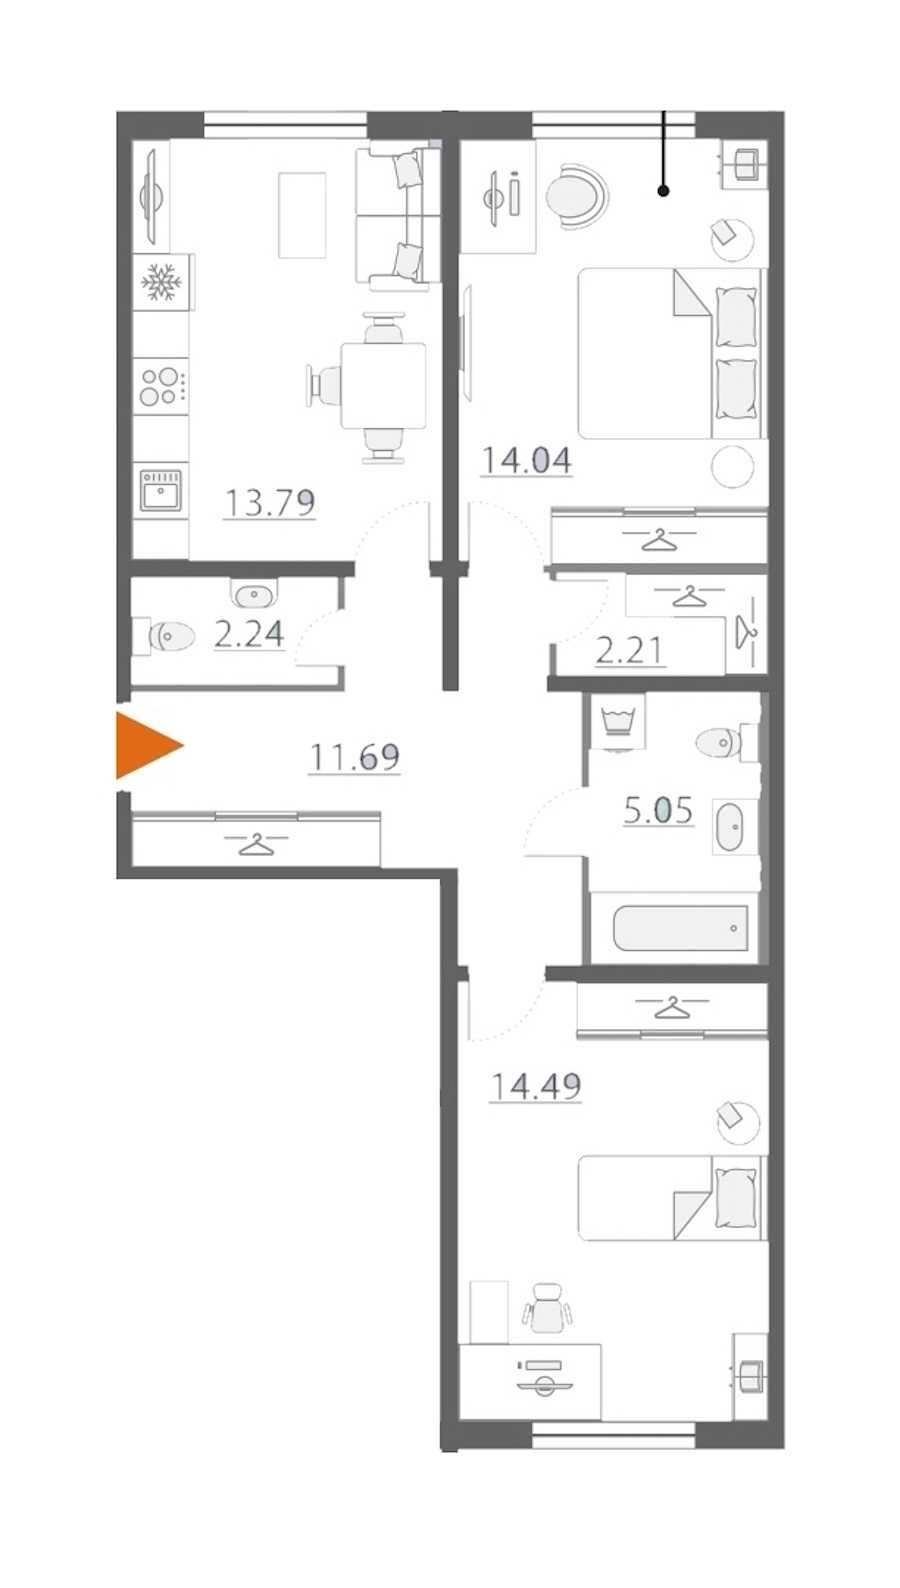 Двухкомнатная квартира в Группа ЛСР: площадь 63.51 м2 , этаж: 1 – купить в Санкт-Петербурге